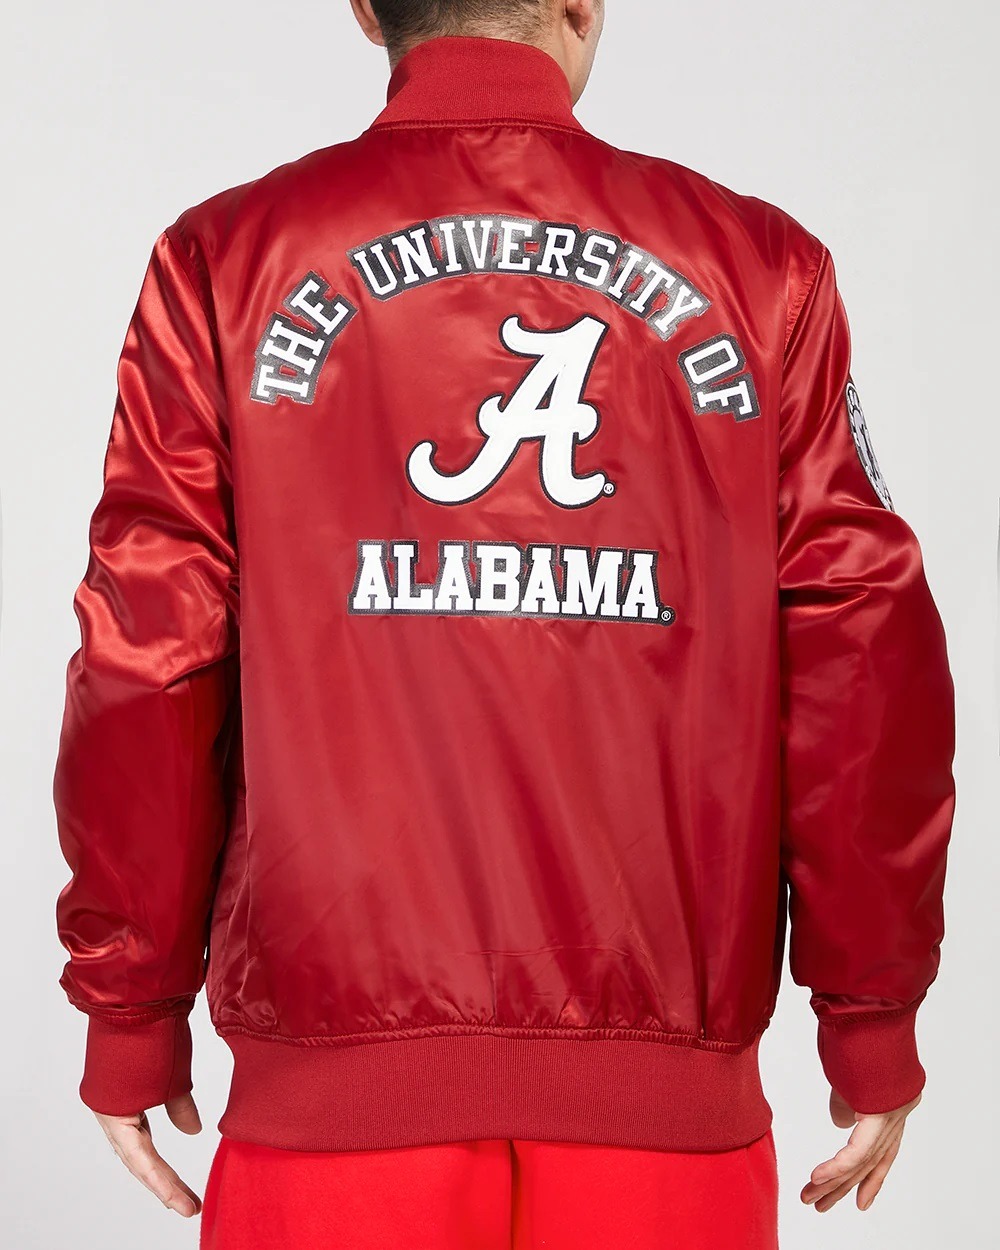 University Of Alabama Classic Red Satin Jacket